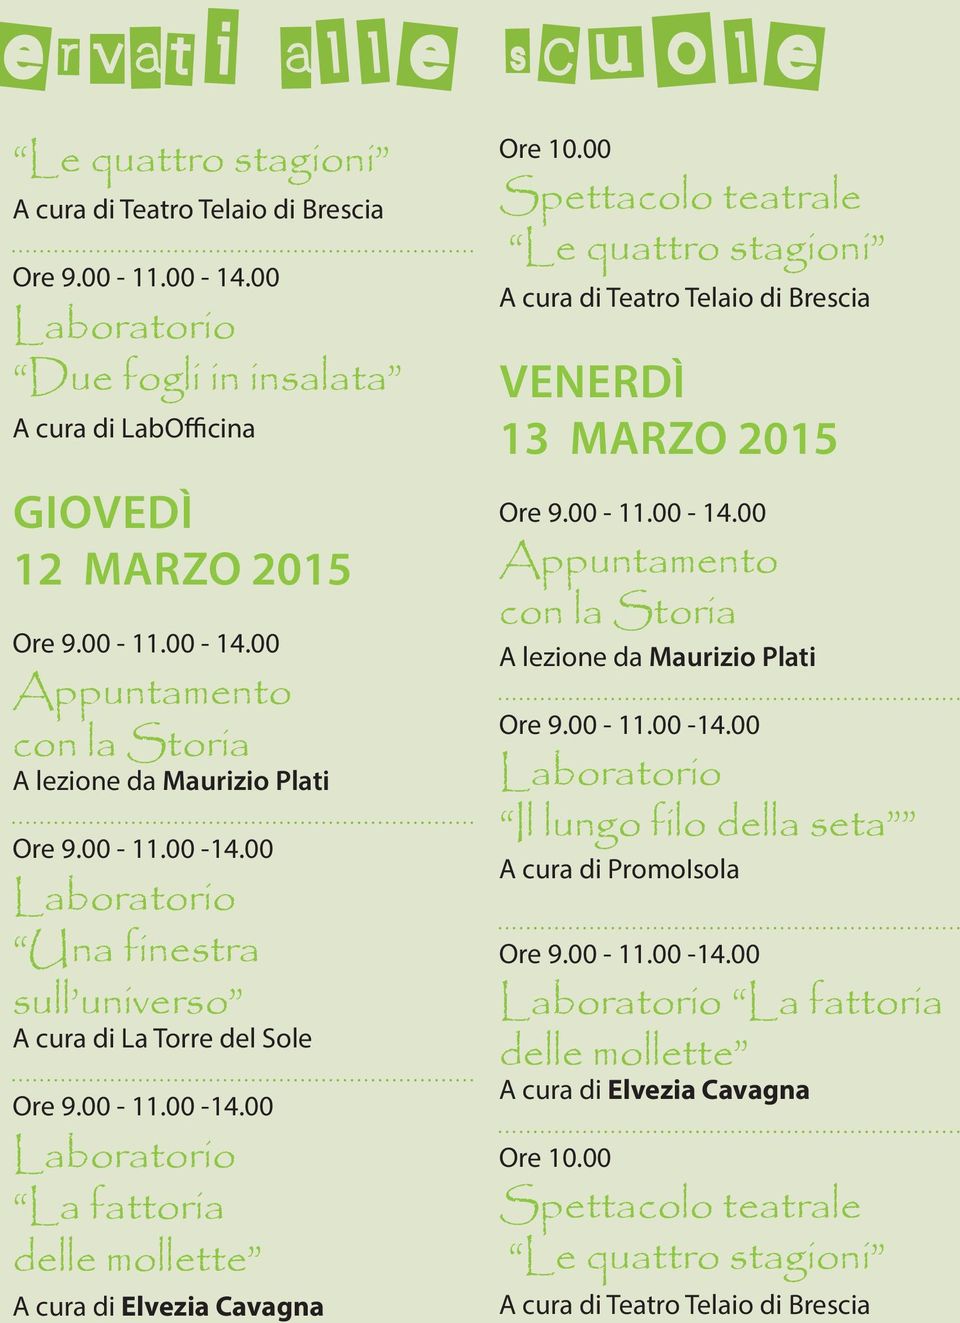 00 Spettacolo teatrale Le quattro stagioni A cura di Teatro Telaio di Brescia Venerdì 13 marzo 2015 con la Storia A lezione da Maurizio Plati Ore 9.00-11.00-14.